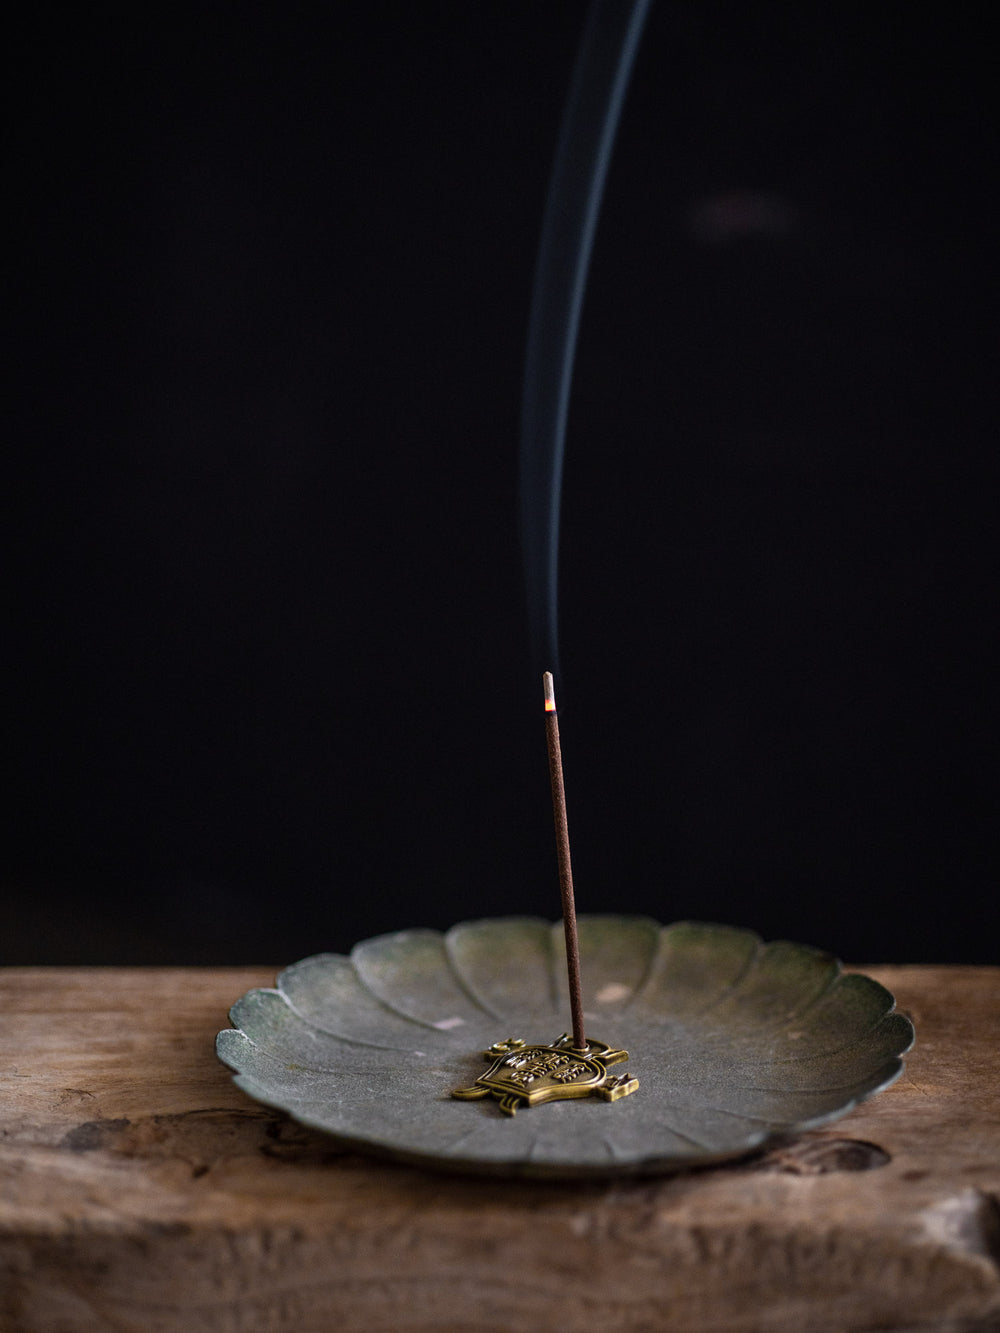 Kungyokudo Incense – Daigo Cherry Blossom